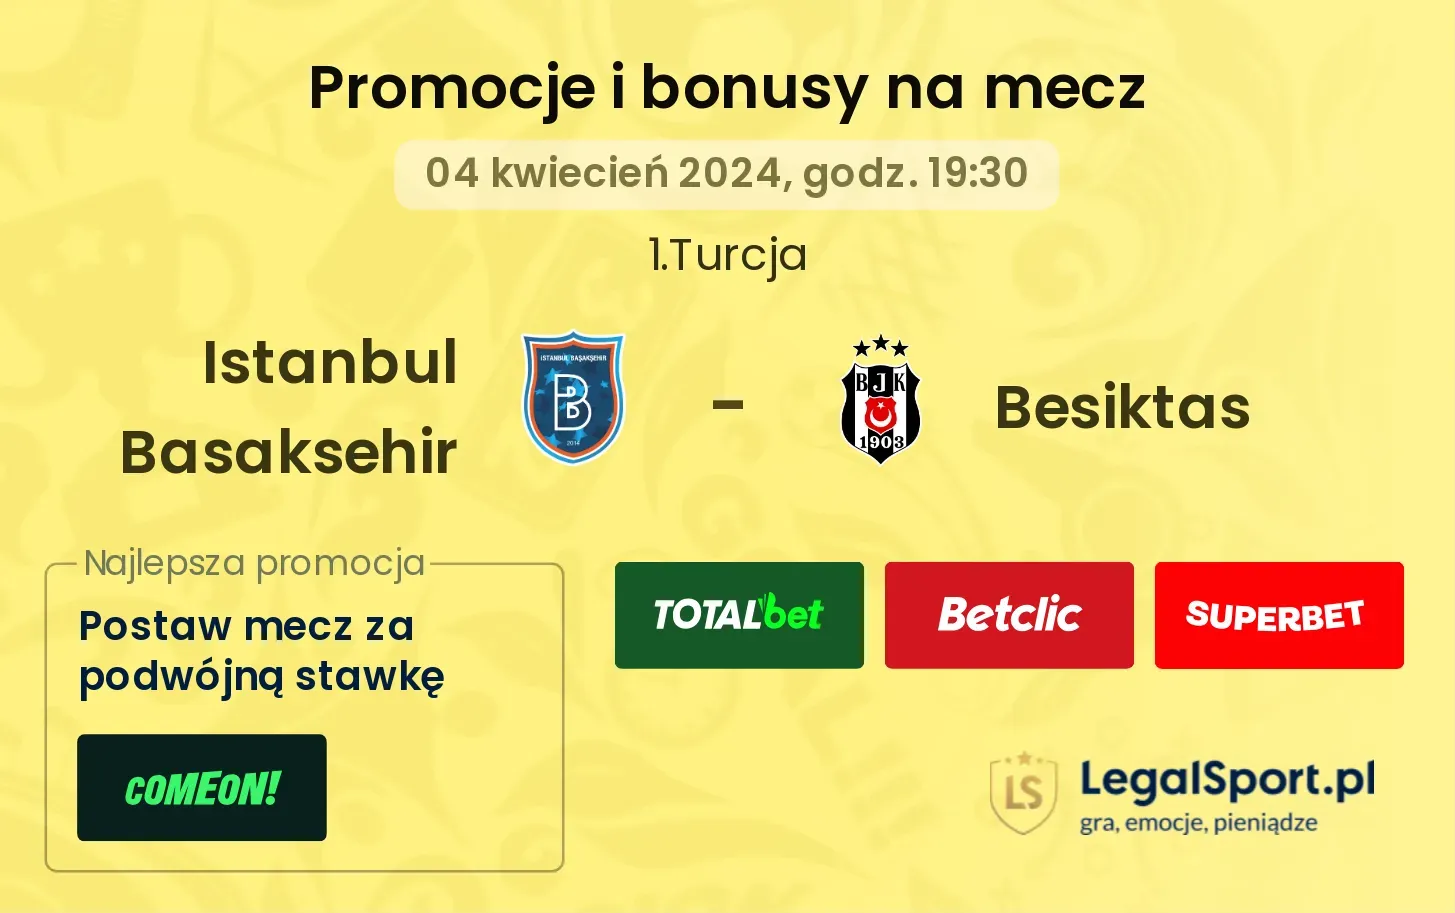 Istanbul Basaksehir - Besiktas promocje bonusy na mecz